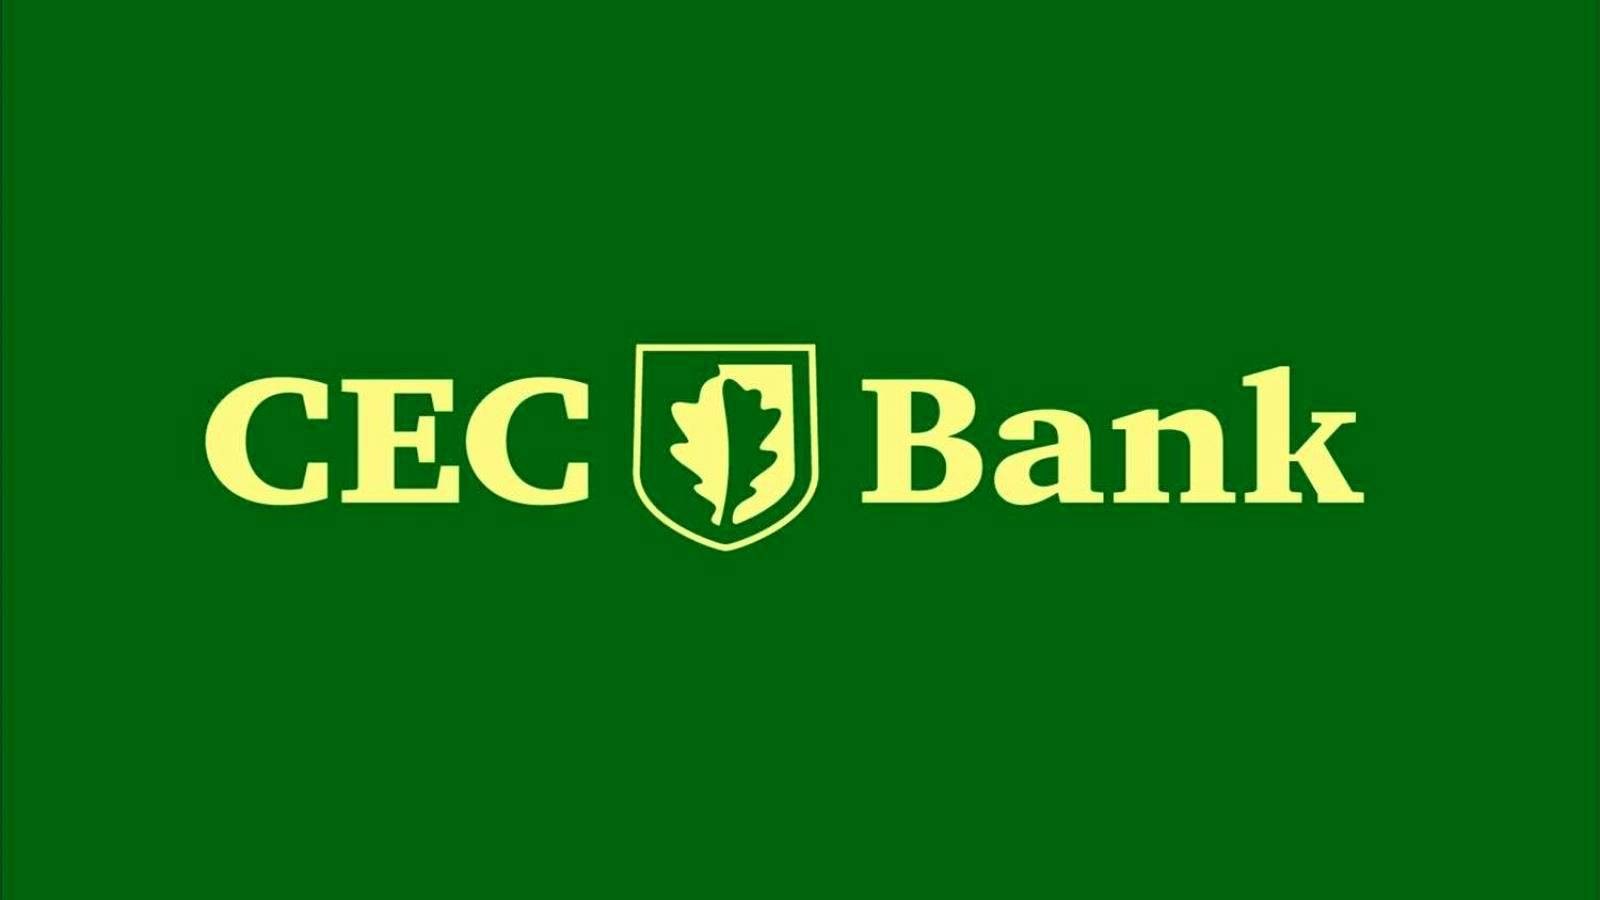 CEC Bank DRINGENDE Warnung an alle rumänischen Kunden